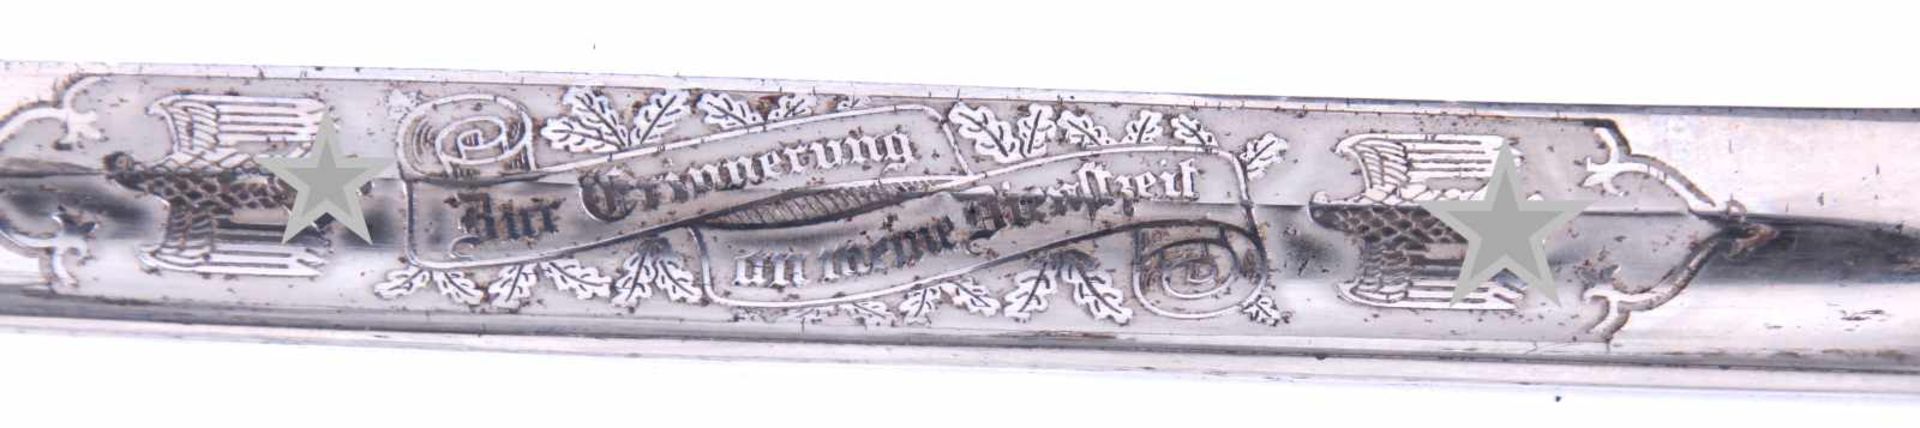 Baïonnette de sortie à lame gravée de la Heer Pièces en métal nickelées. Lame complète dans sa - Bild 4 aus 4